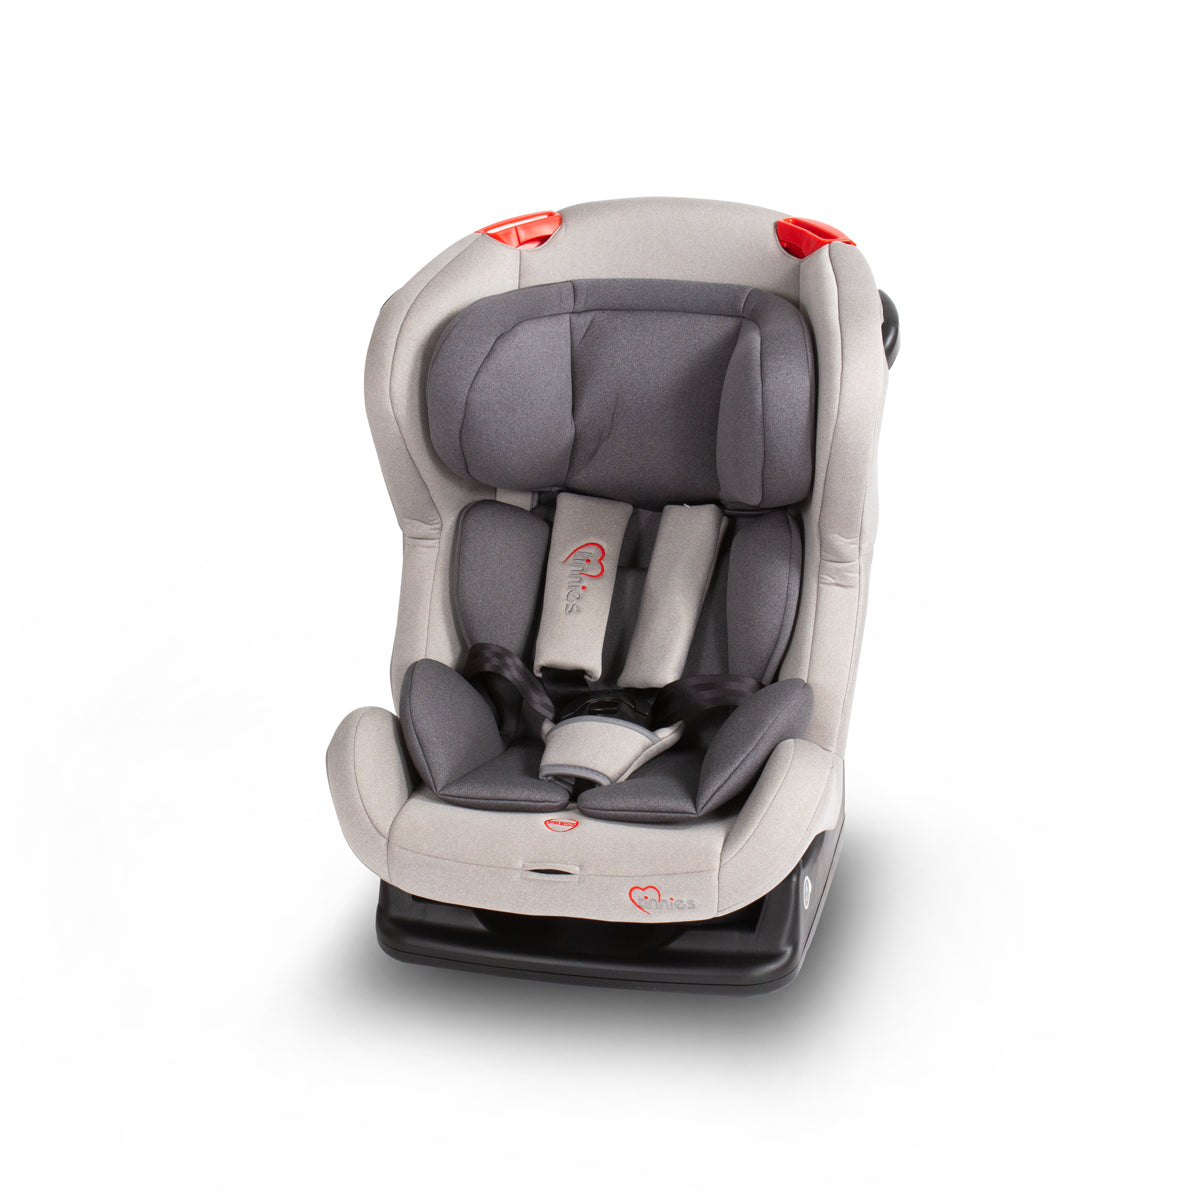 Tinnies Baby Car Seat T011 - Grey